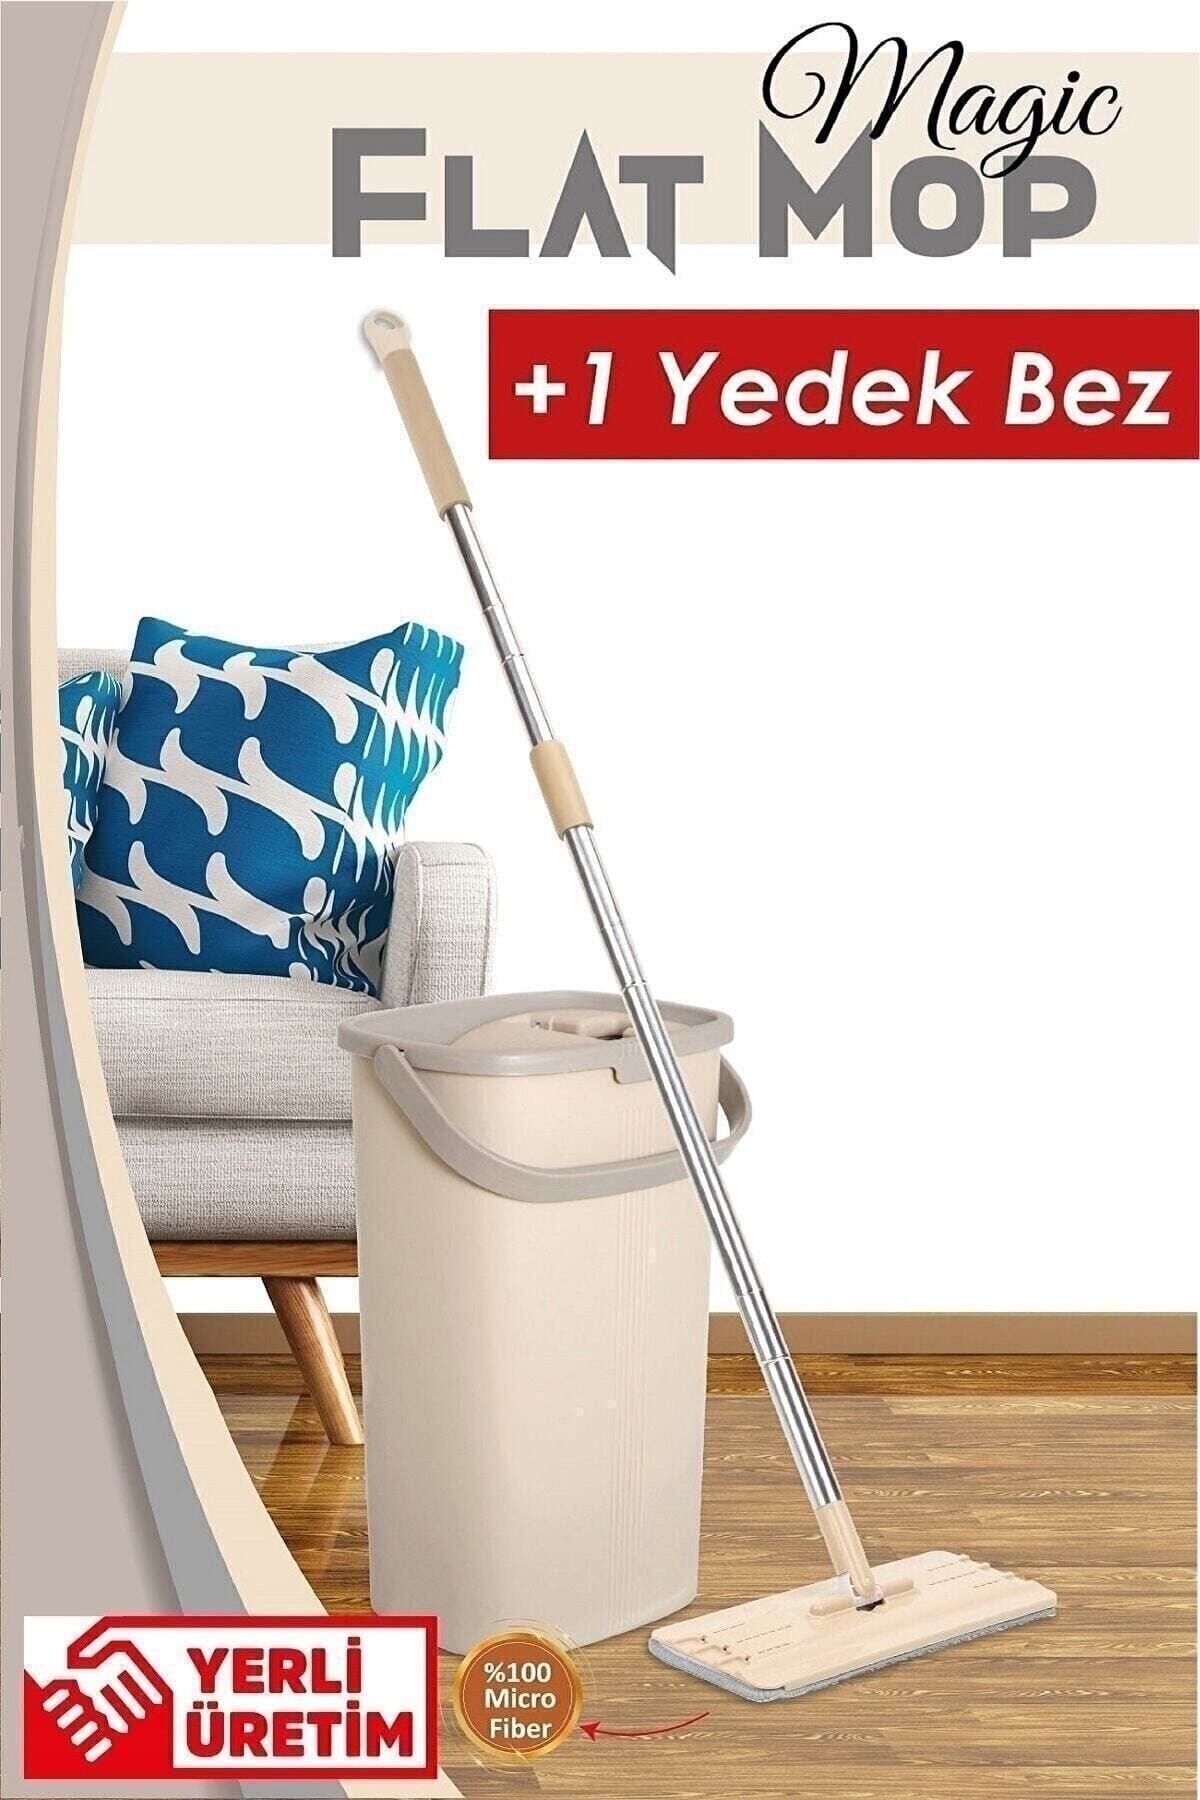 Bi-Öz Home Bi-öz Home Magic Flat (TABLET) Mop Set 1 Yedek Bez Flatmobset3